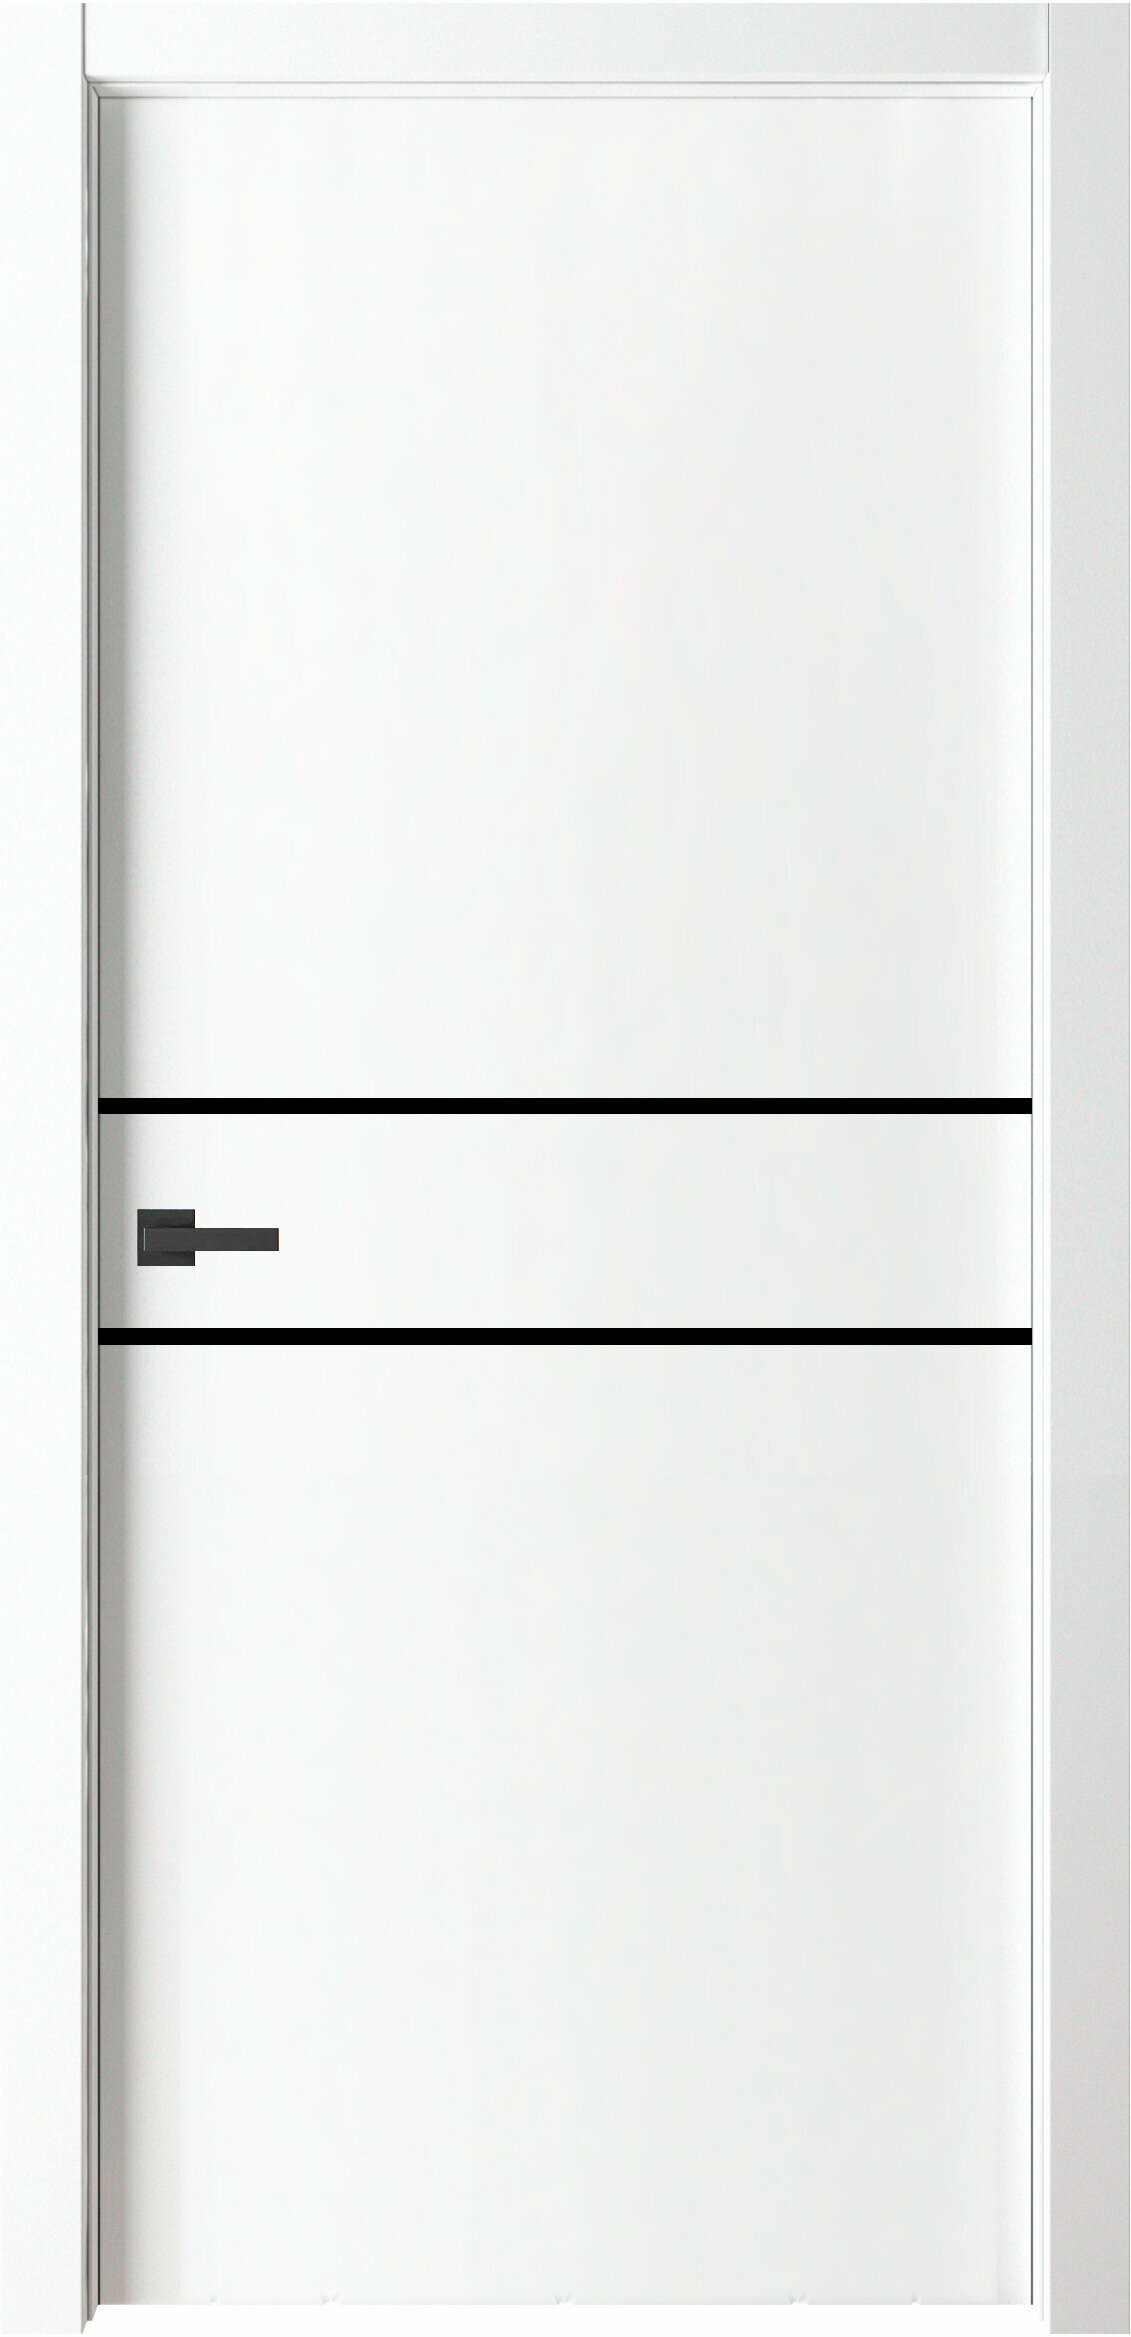 Межкомнатная дверь ВДК Line2 Цвет белый 600x2000 мм (комплект: полотно + коробочный брус + наличники)